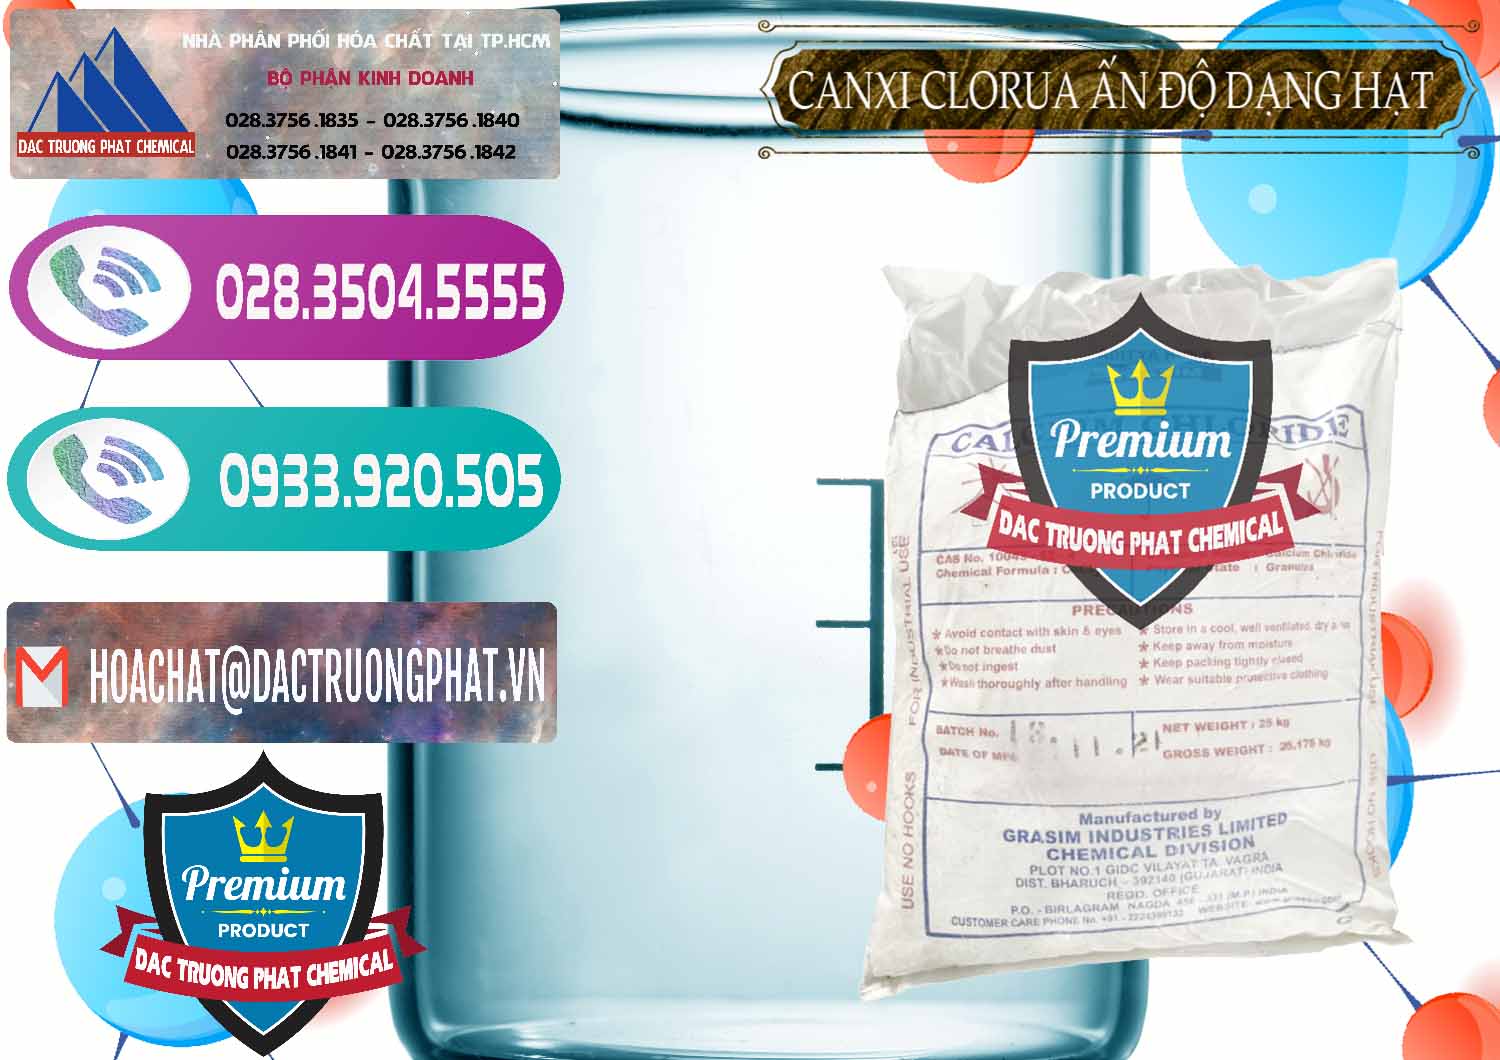 Đơn vị chuyên bán _ phân phối CaCl2 – Canxi Clorua Dạng Hạt Aditya Birla Grasim Ấn Độ India - 0418 - Phân phối _ nhập khẩu hóa chất tại TP.HCM - hoachatxulynuoc.com